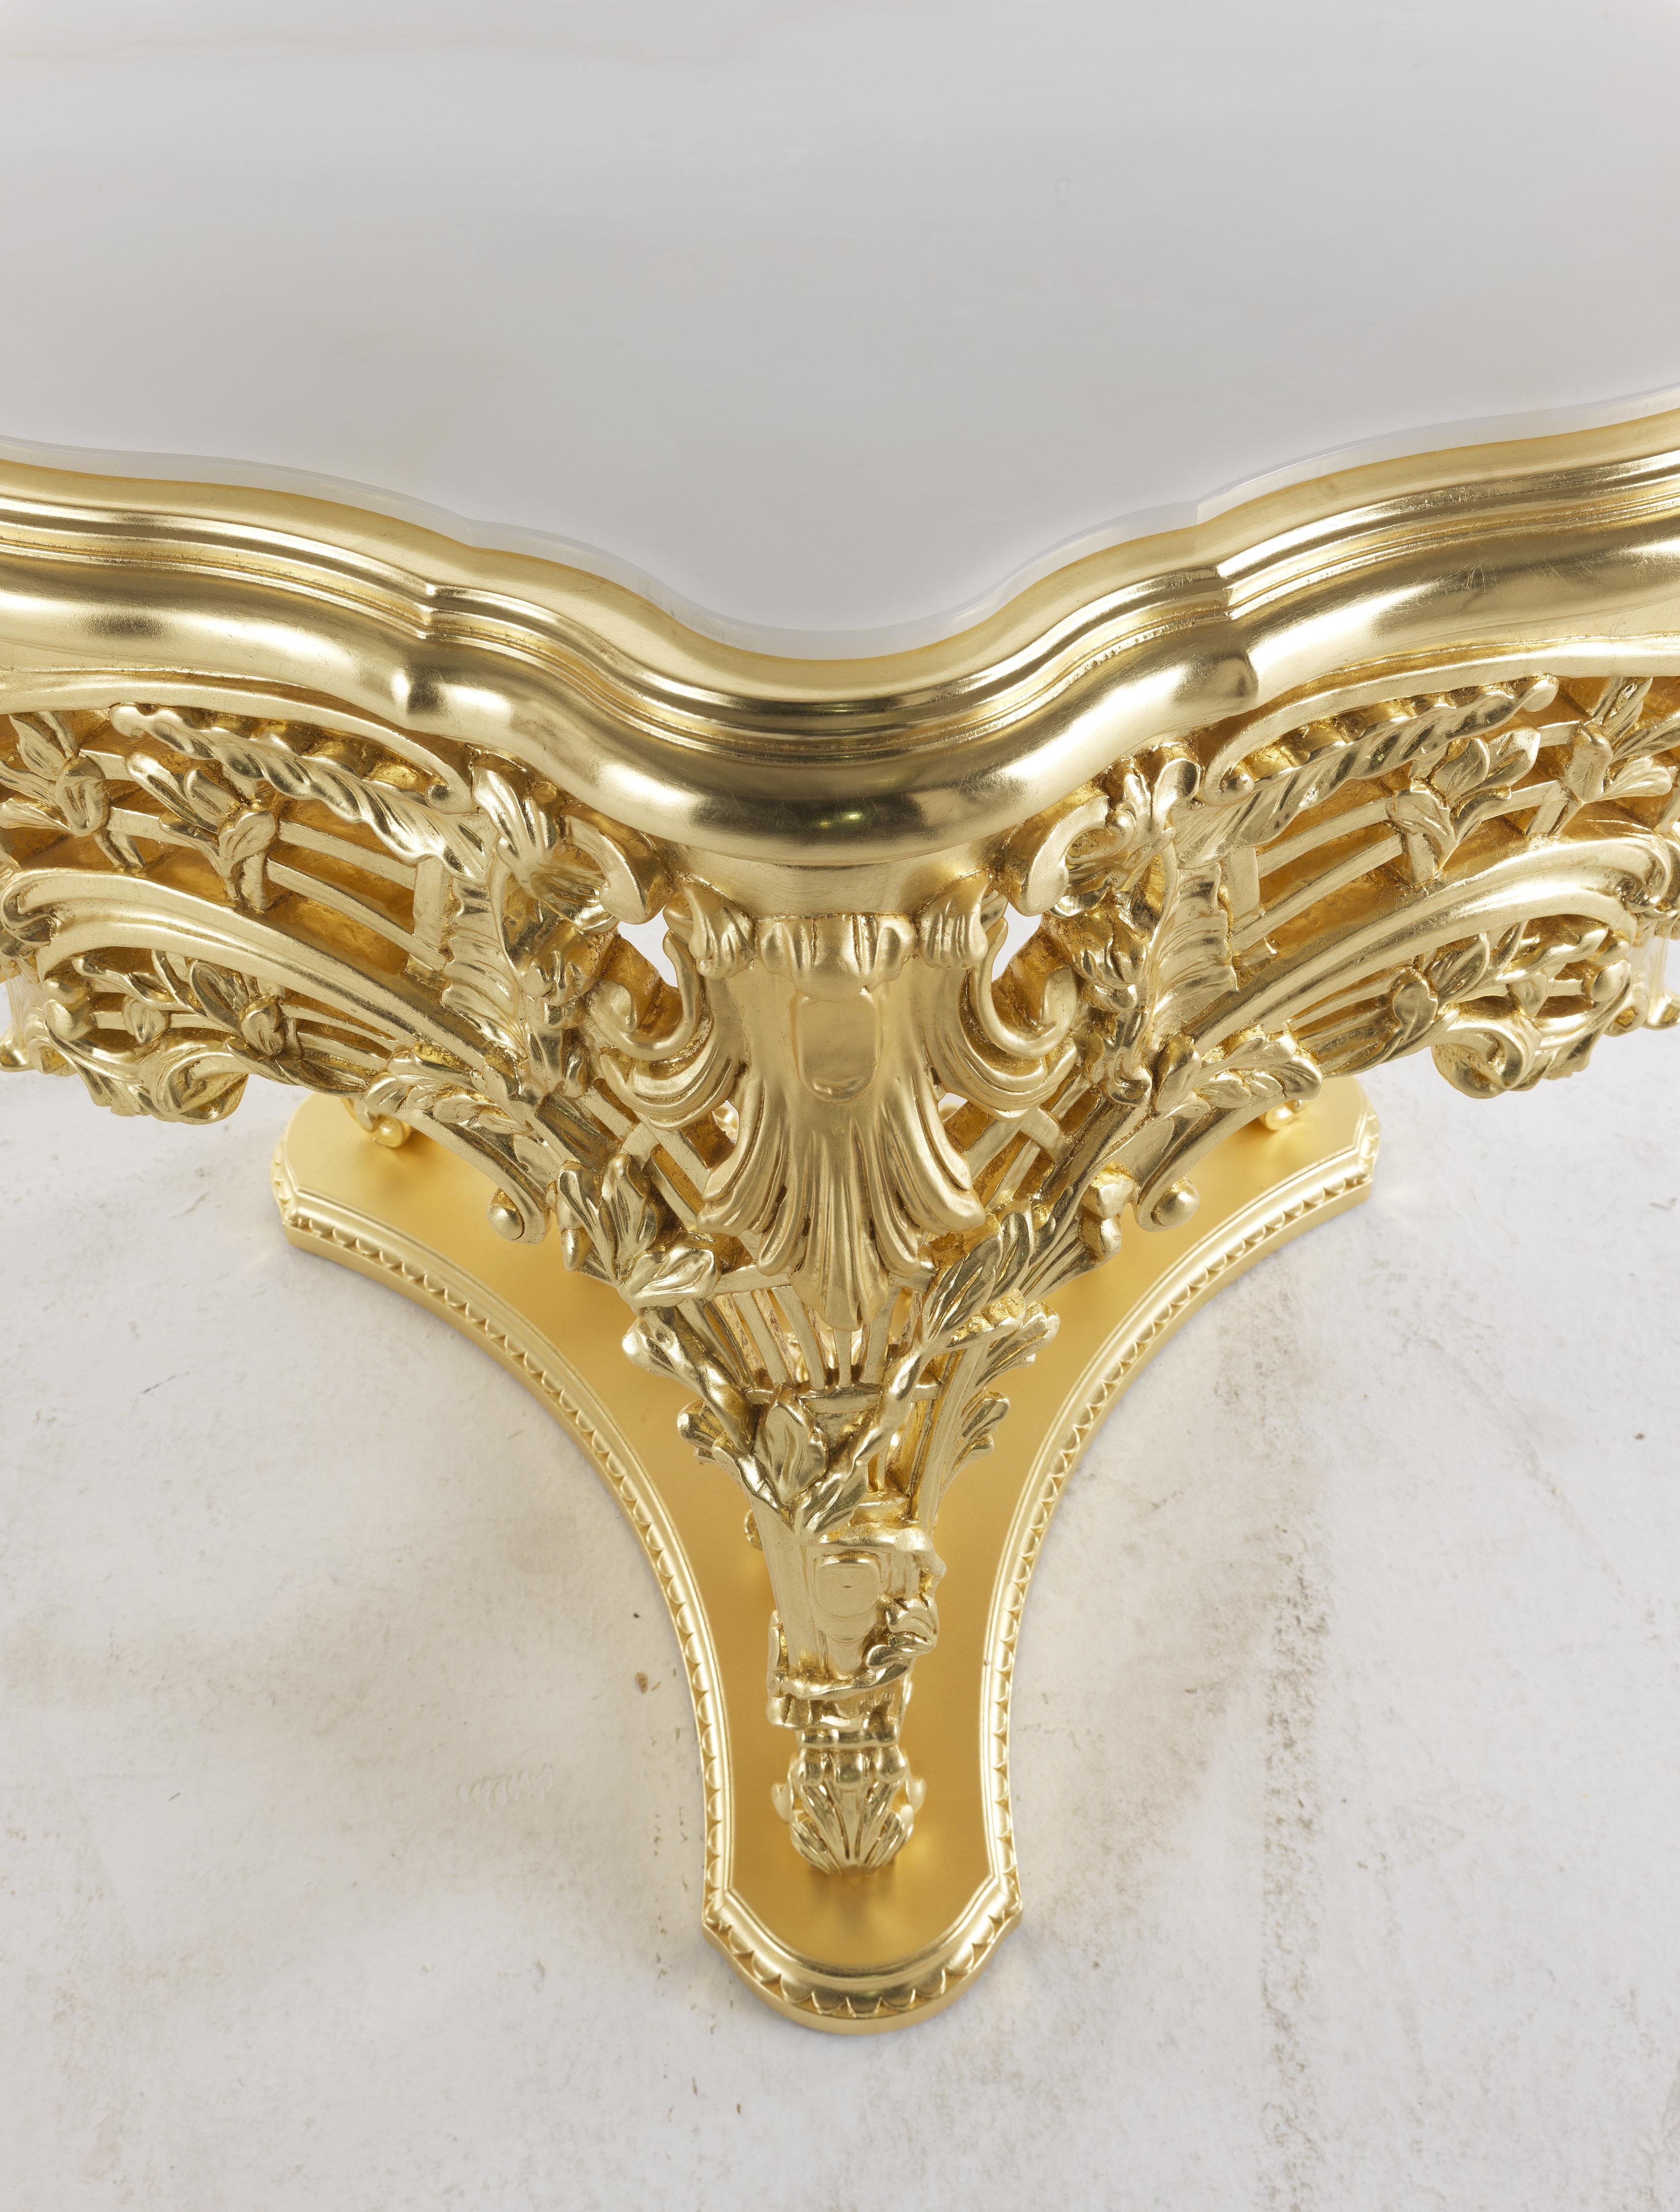 Helios ist ein raffinierter Beistelltisch aus handgeschnitztem Buchenholz mit einer glänzenden und mattgoldenen Oberfläche. Ein exklusives und luxuriöses Möbelstück, das ein Beispiel für barocke Kabinettkunst von großer Raffinesse darstellt. Die